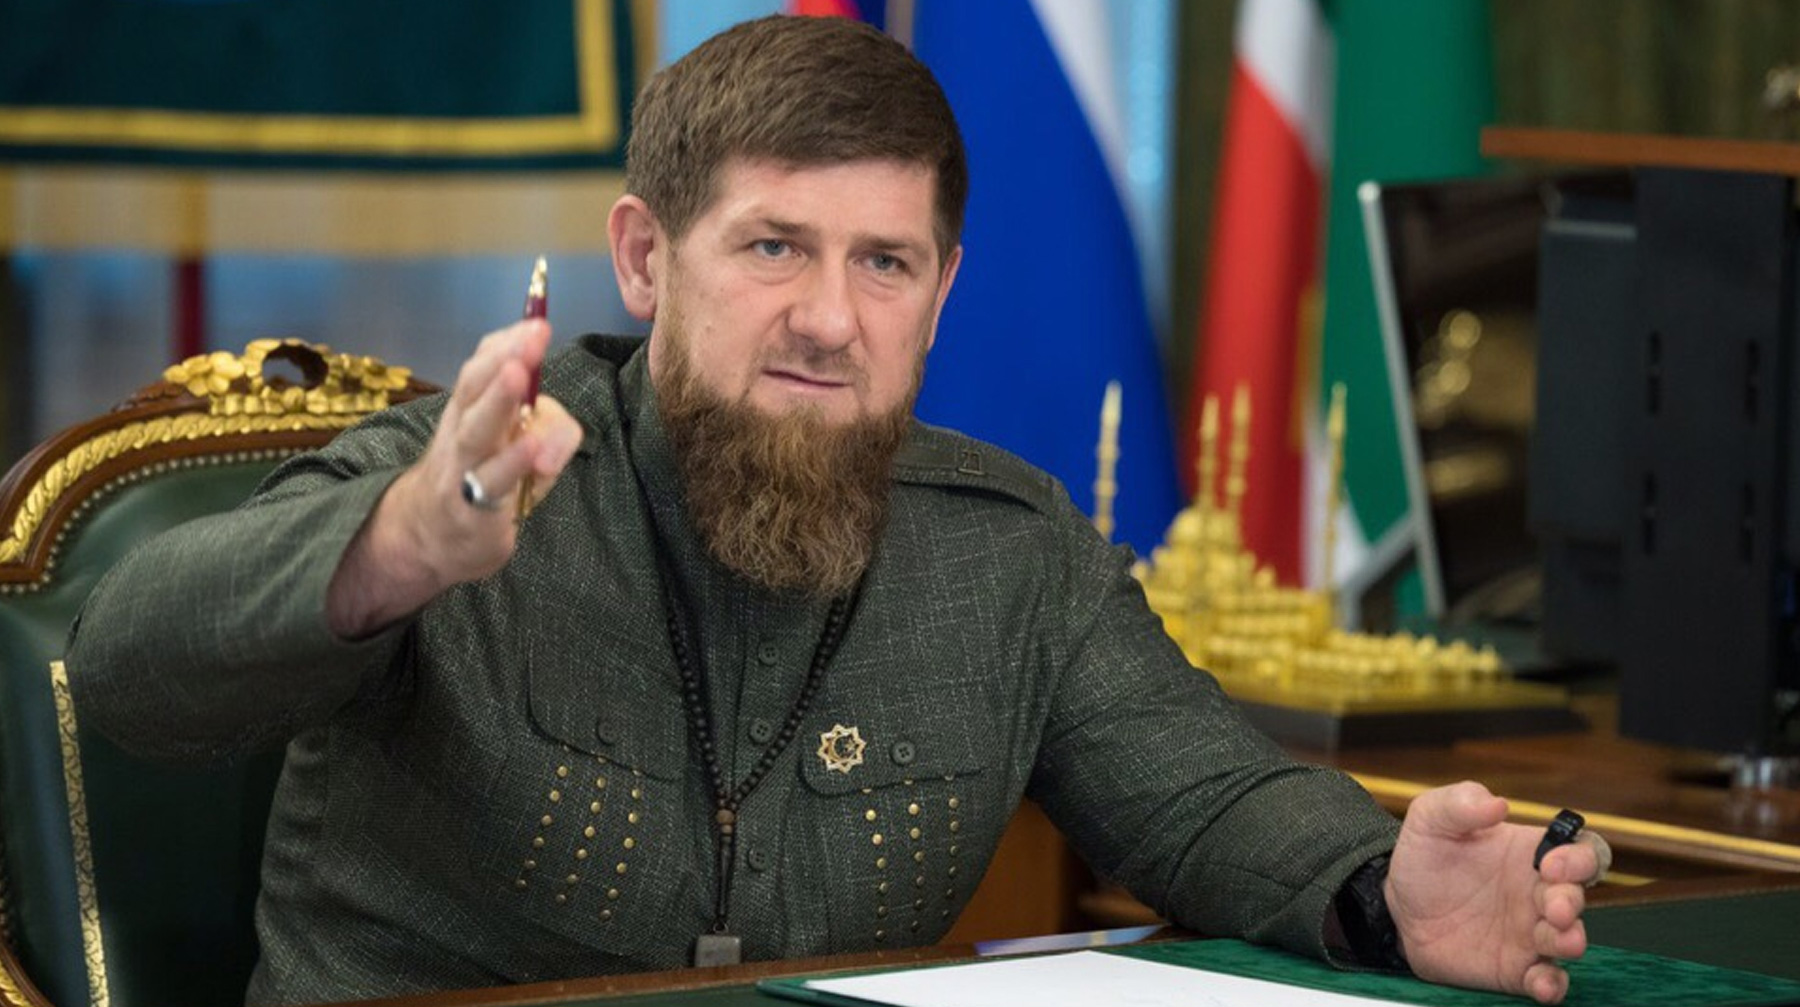 Политики в Вашингтоне стремятся реализовать лишь одну цель — поставить Россию на колени, считает чеченский лидер undefined